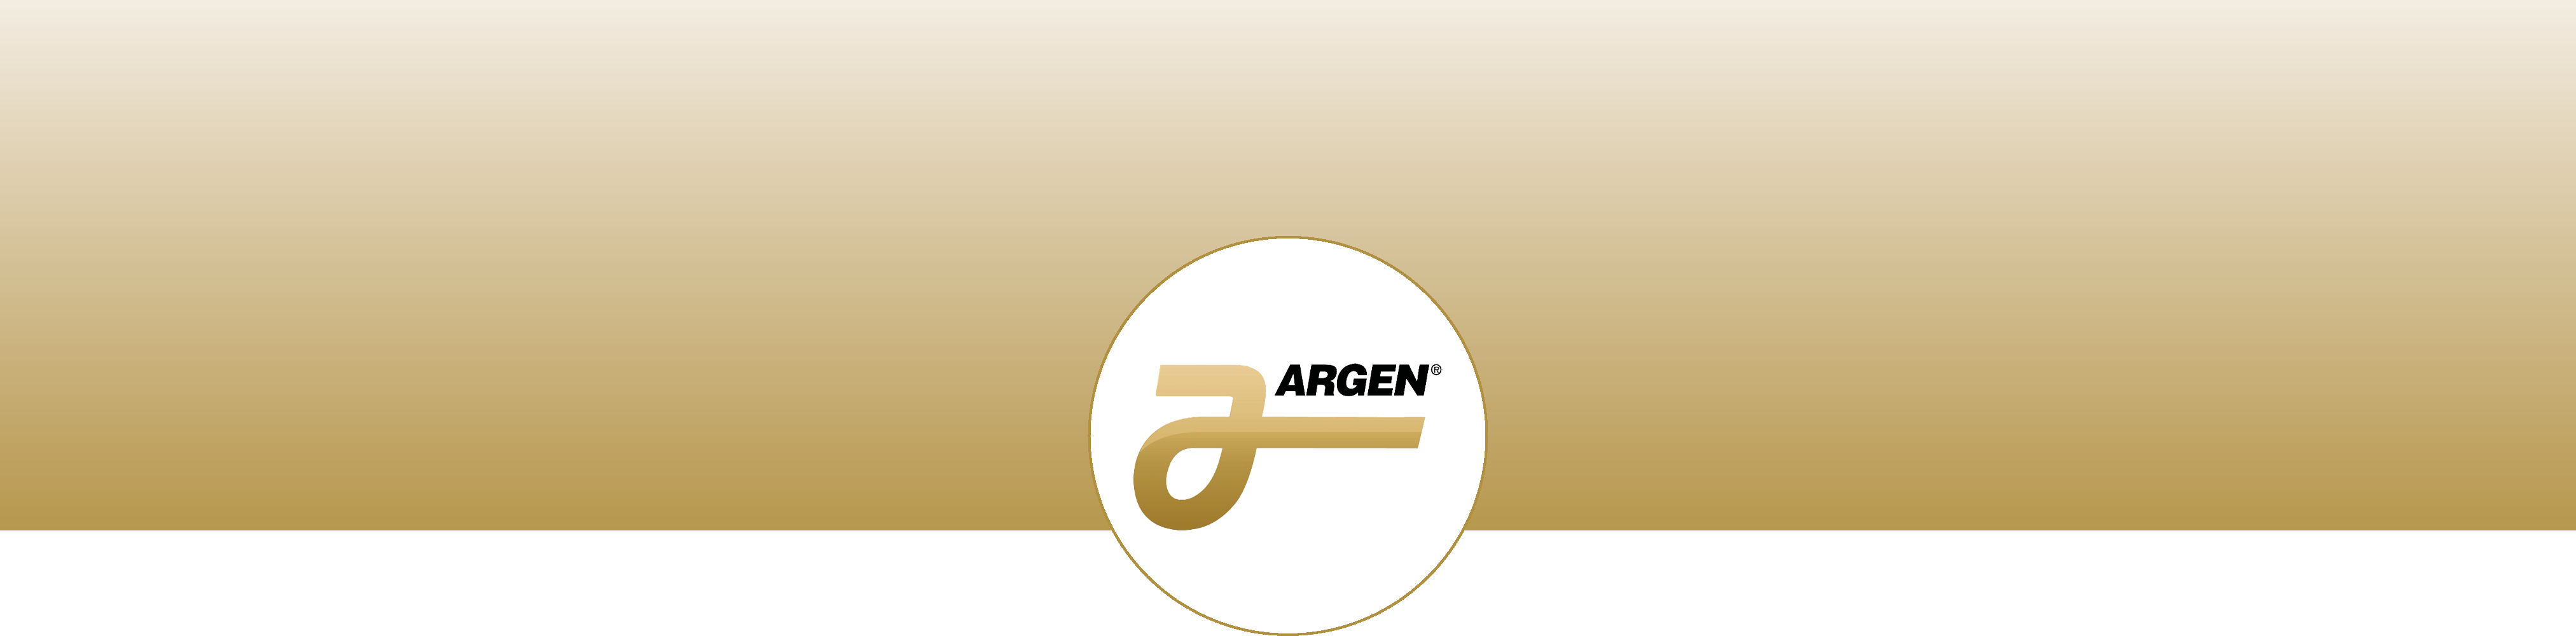 banner_argen